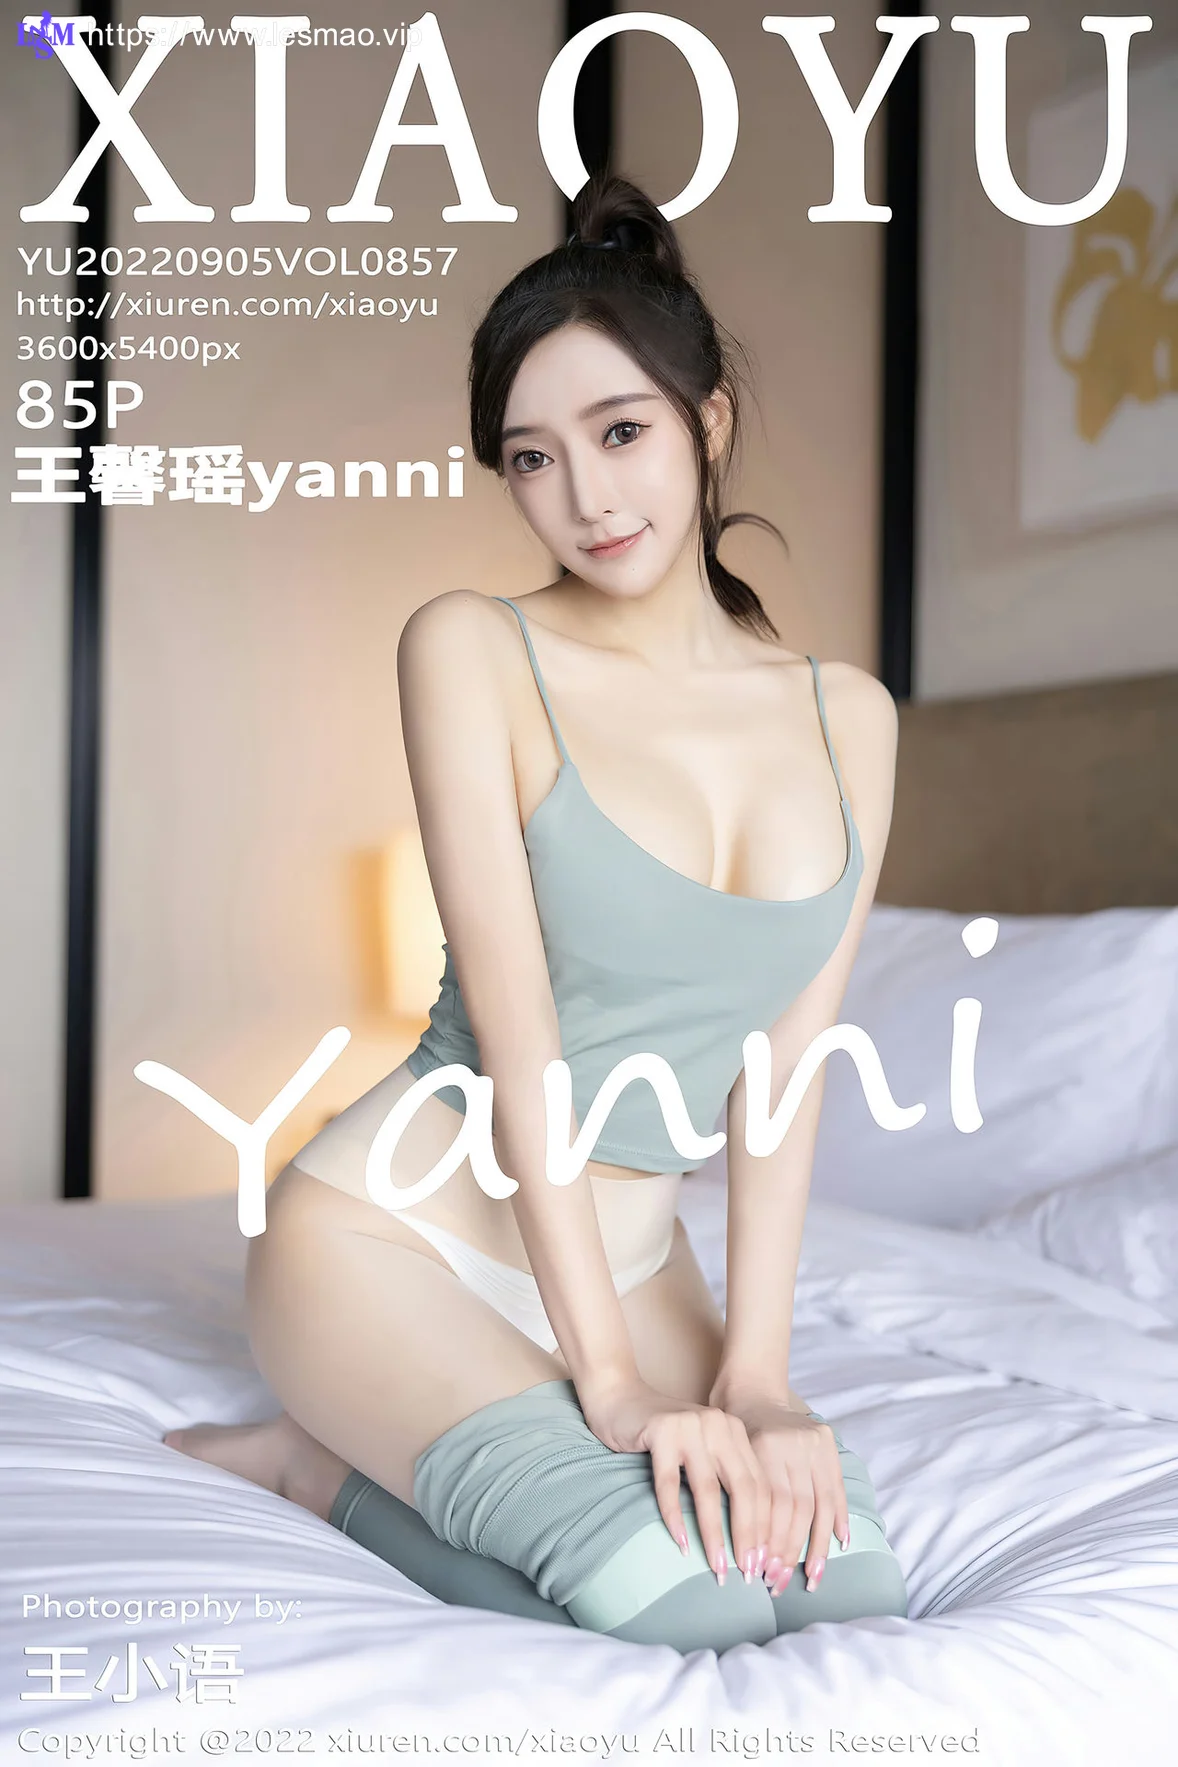 XIAOYU  语画界 Vol.857  王馨瑶yanni 健身所场景拍摄性感写真111 - 2